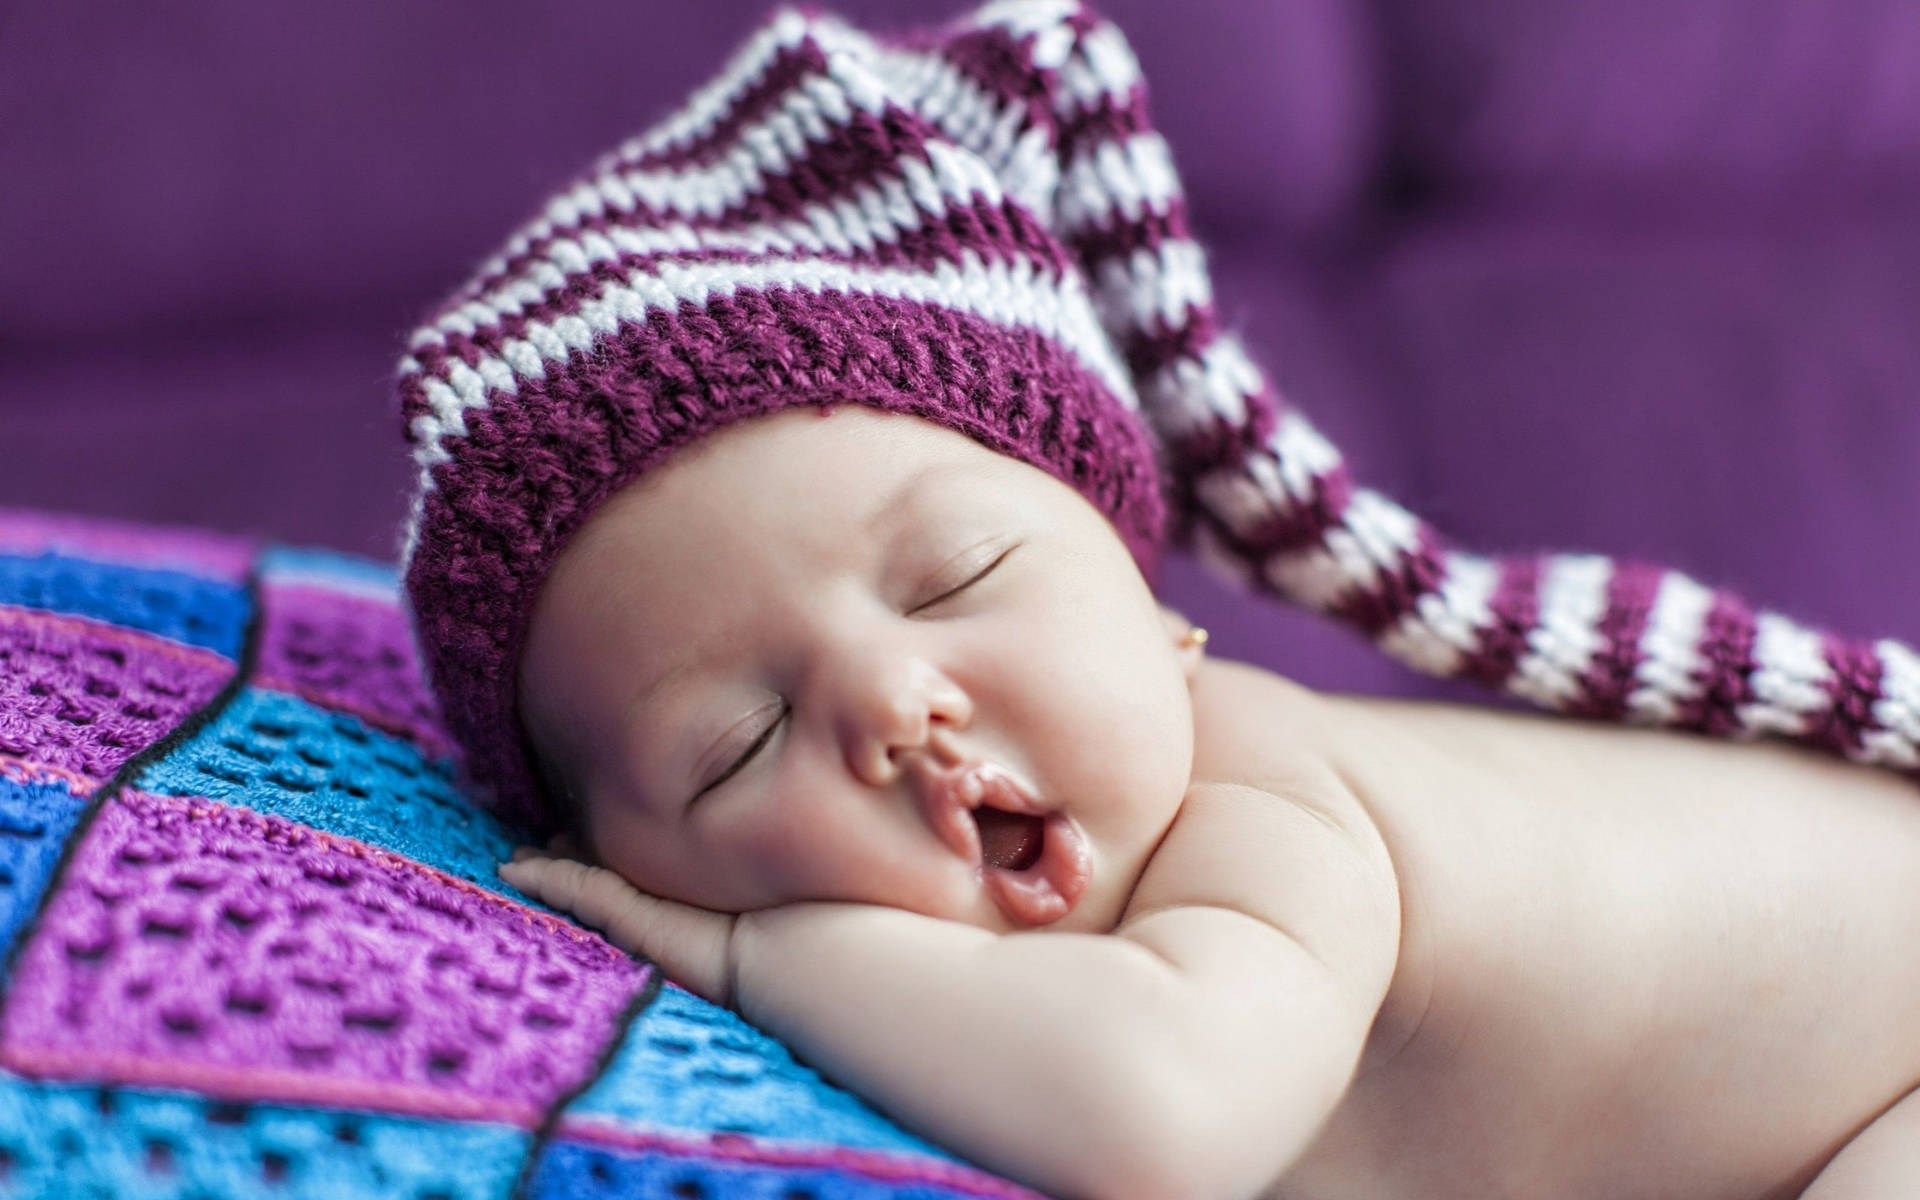 Sleeping Baby Wearing Purple Crochet Bonnet Background